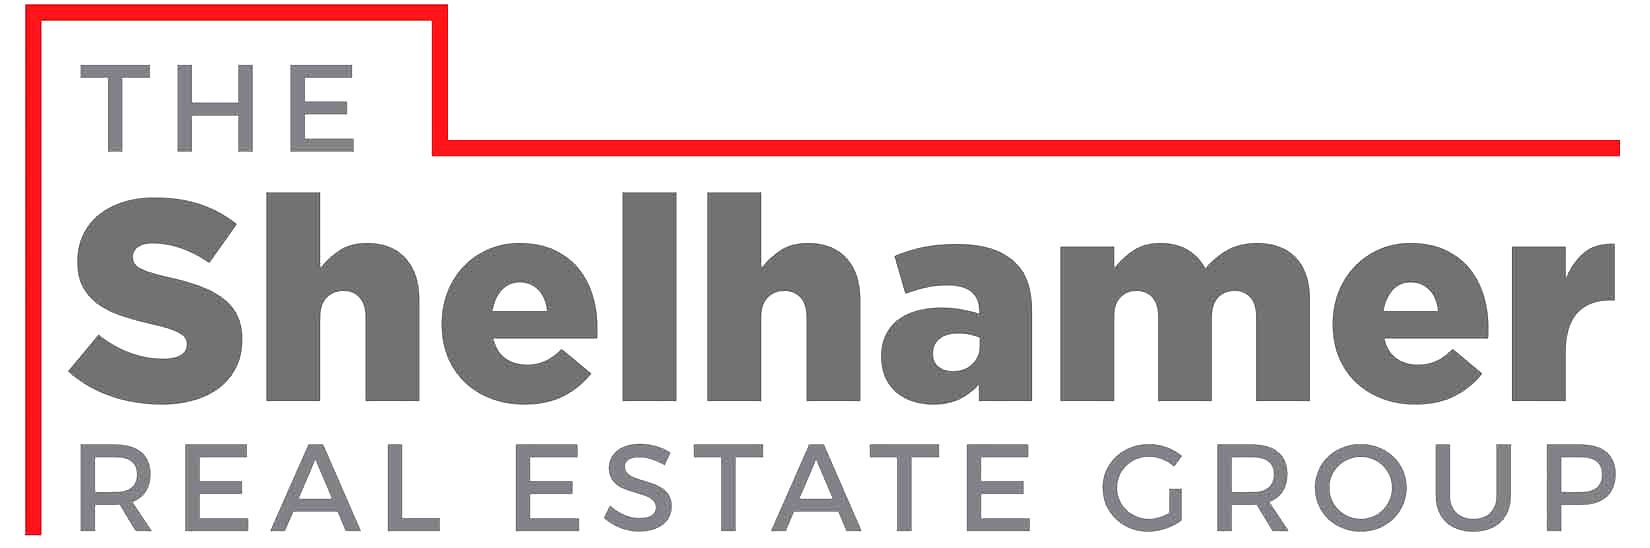 Highland Park California Bungalow | Highland Park Houses For Sale | Highland Park Real Estate Agent Glenn Shelhamer